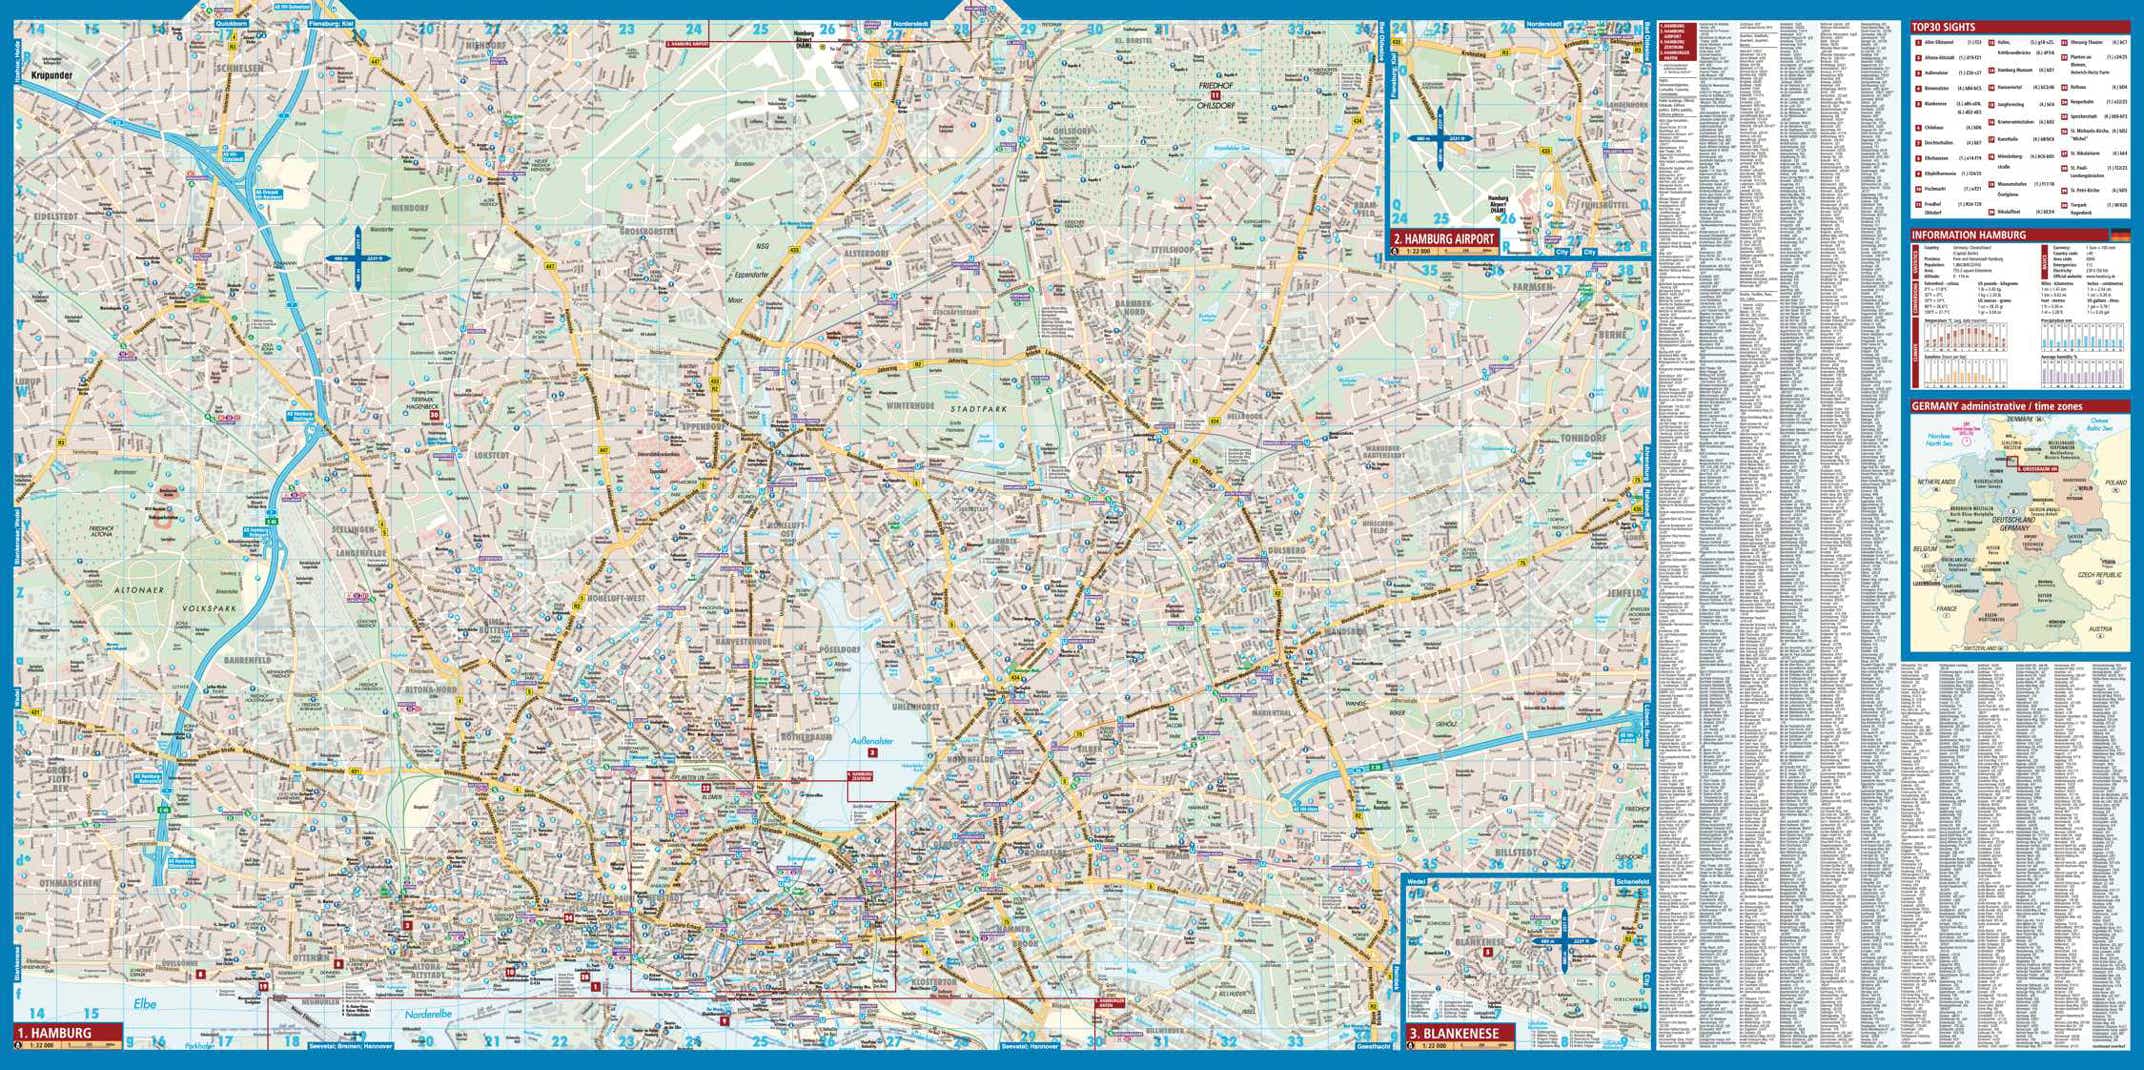 Hamburg Borch Map - page 2 